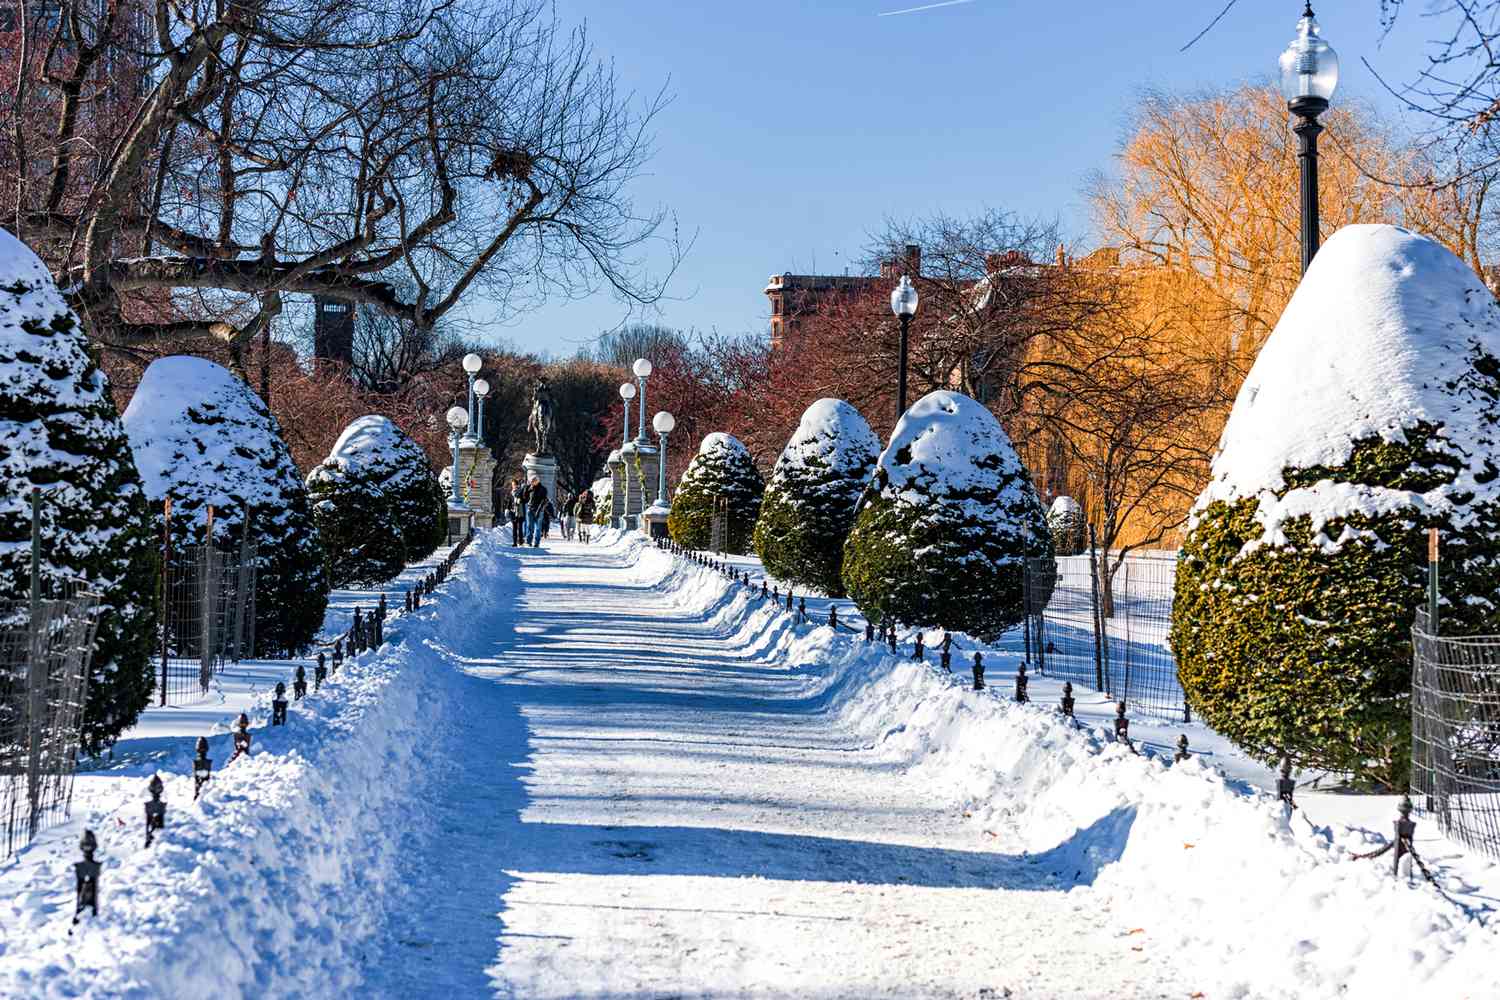 Boston Park et la statue de George Washington avec de la neige recouvrant le sol et les arbres